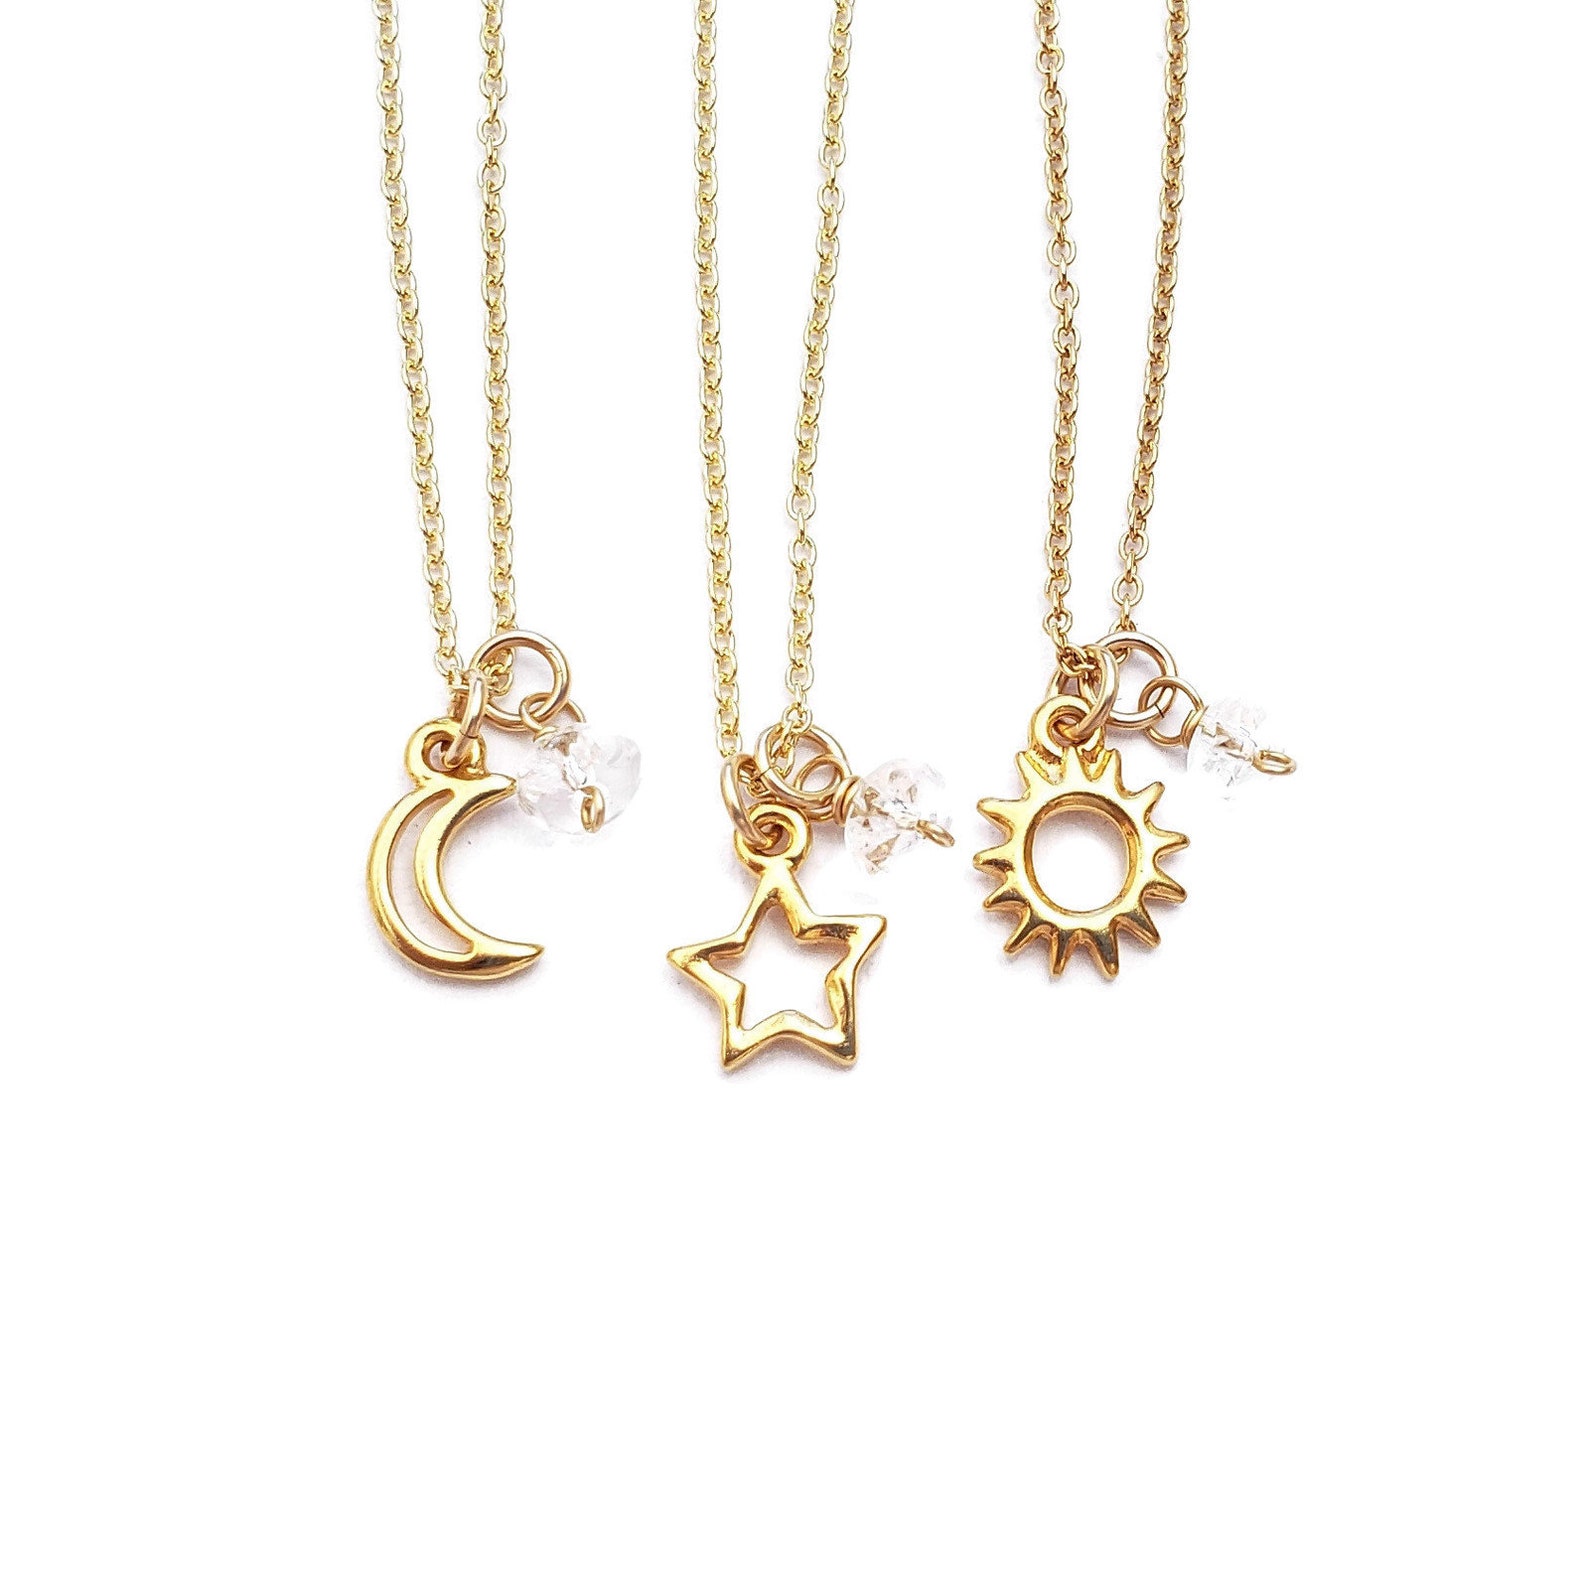 Best Friend Sun Moon Star Necklaces 3 Best Friend Necklace Set | Etsy